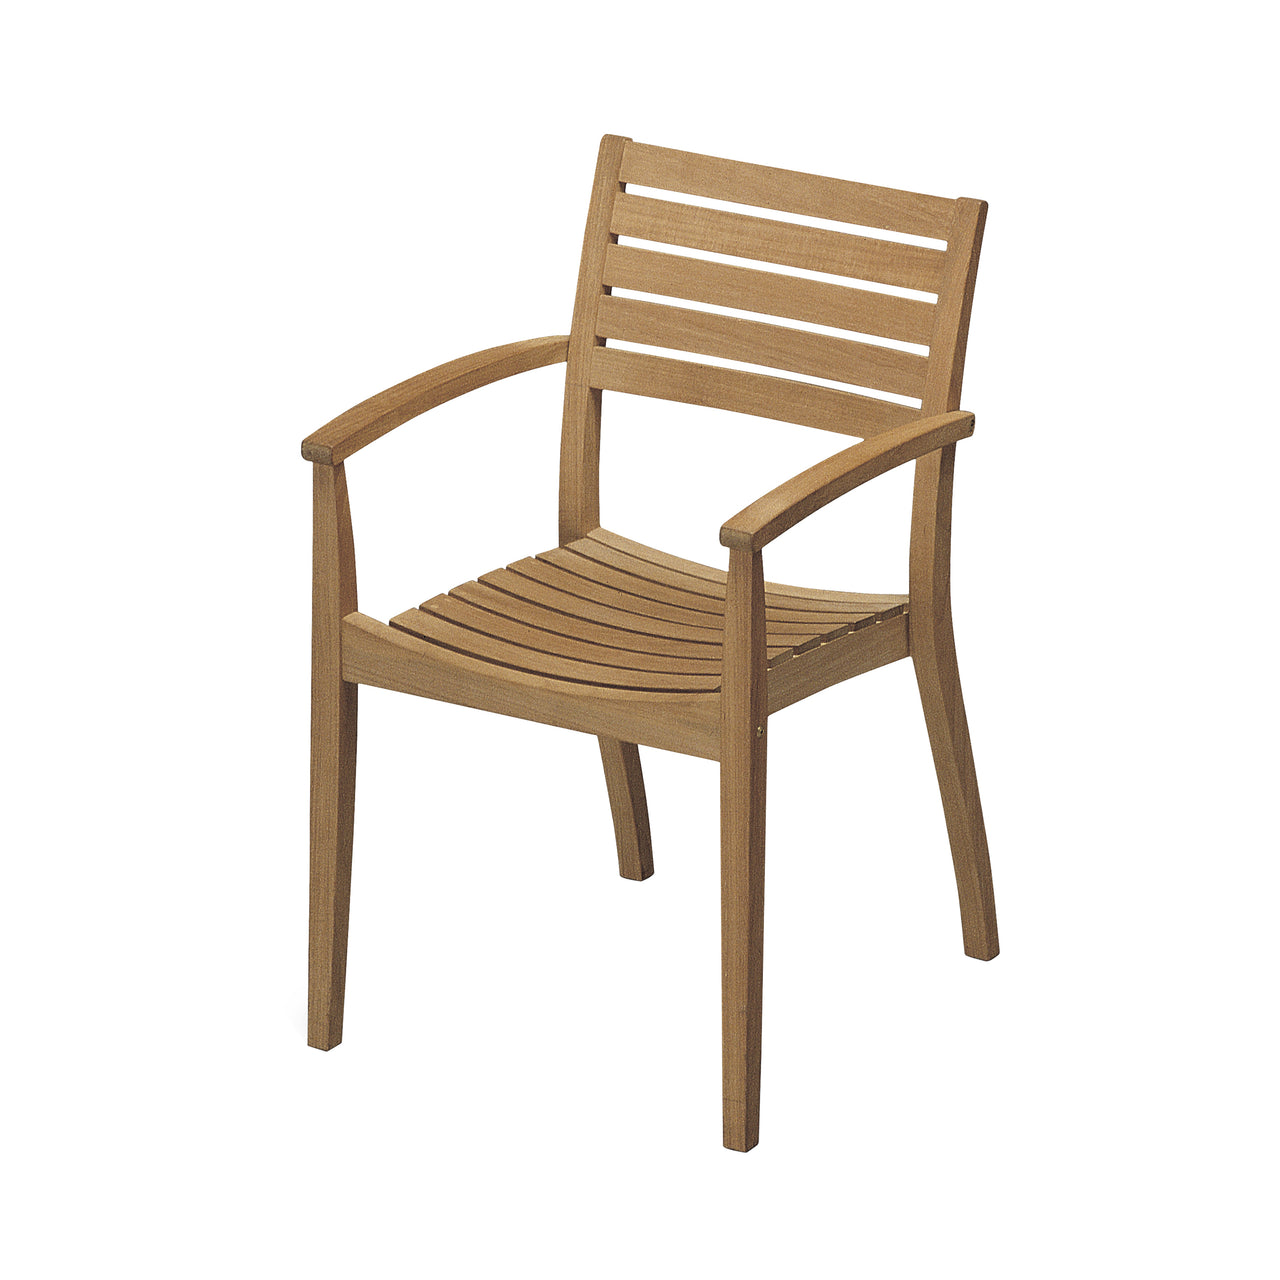 Ballare Chair: Outdoor